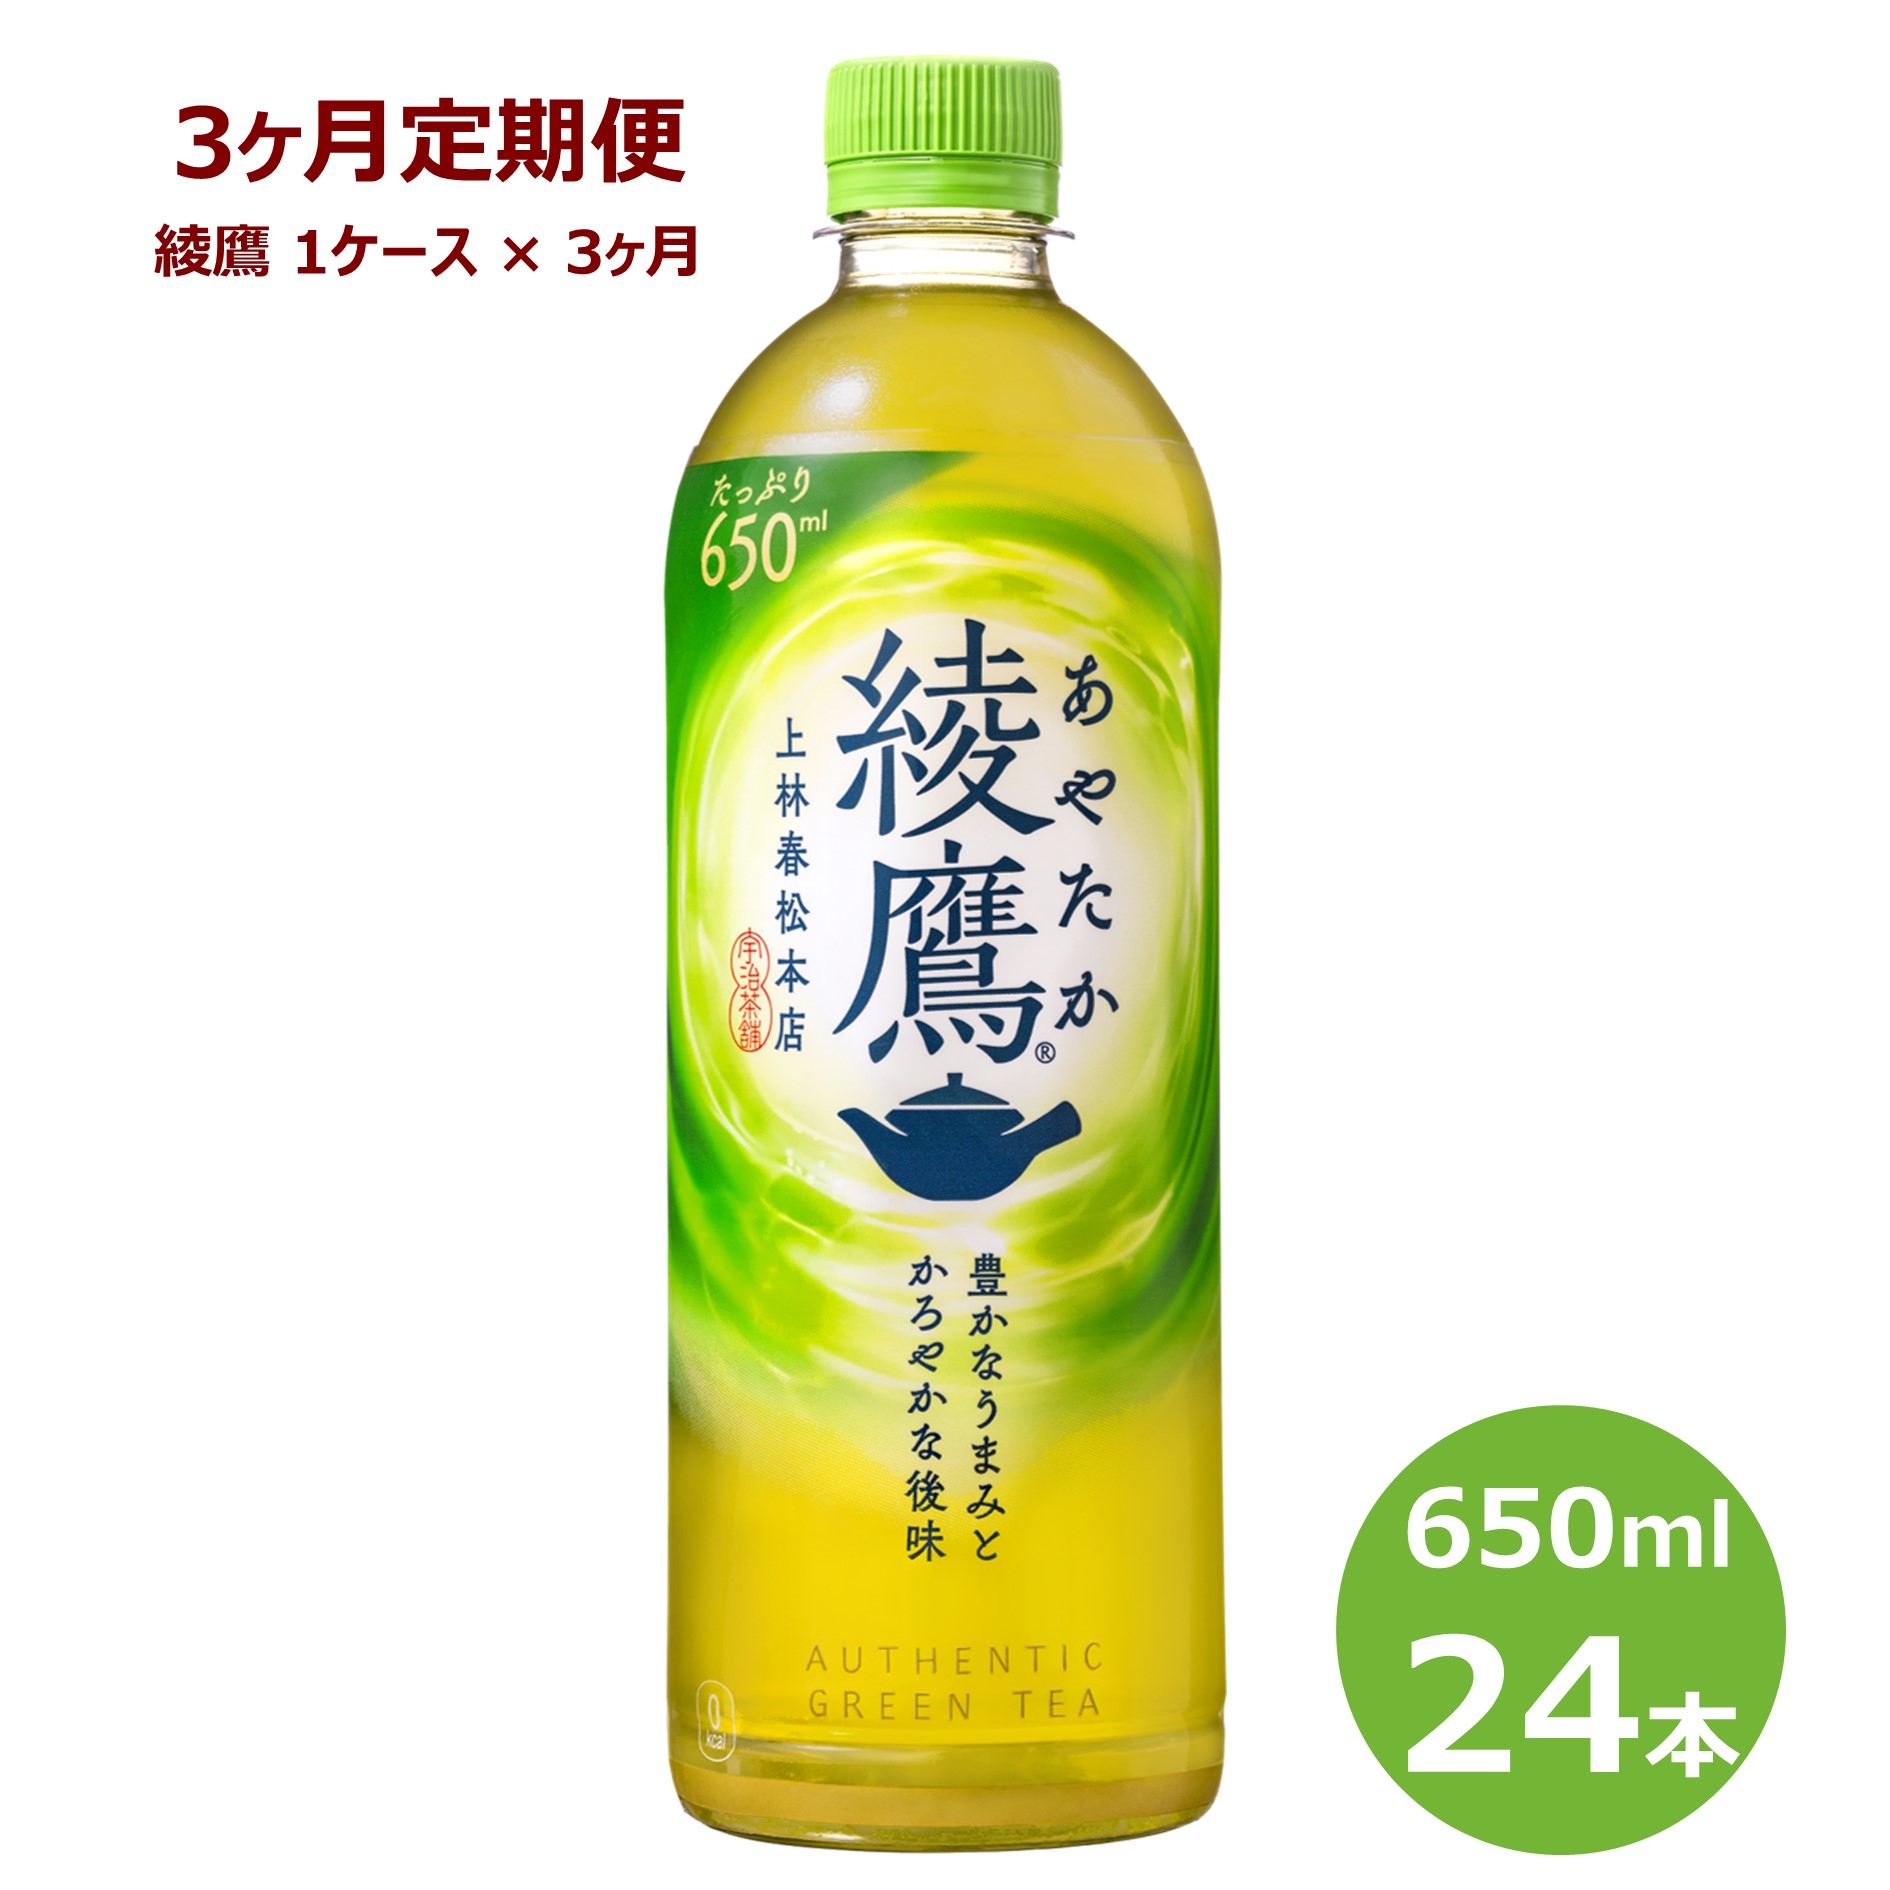 [3ヶ月定期便]綾鷹 650ml ペットボトル 24本セット 緑茶 お茶 リニューアル コカ・コーラ